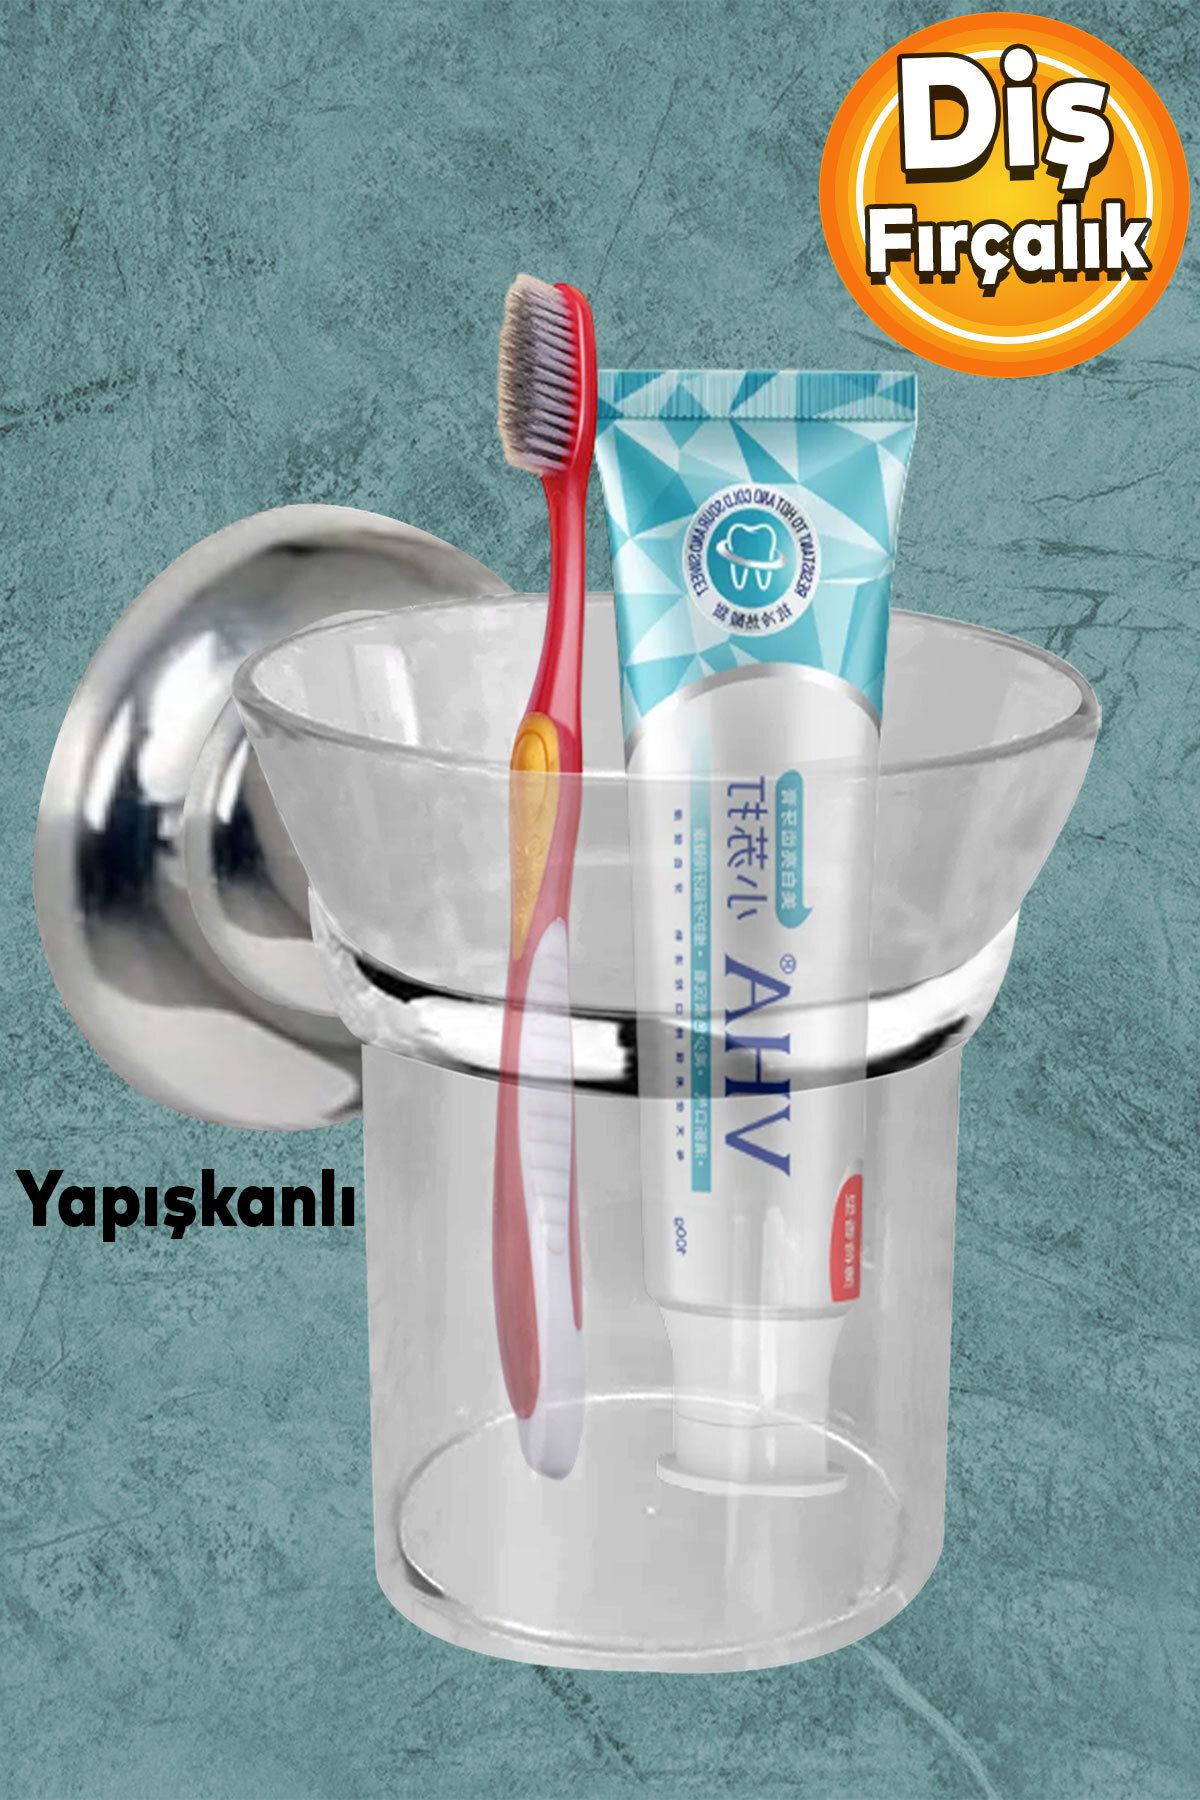 Badem10 Diş Fırçalık Yapışkanlı Banyo Diş Fırçası Kabı Kutusu Krom Kristal